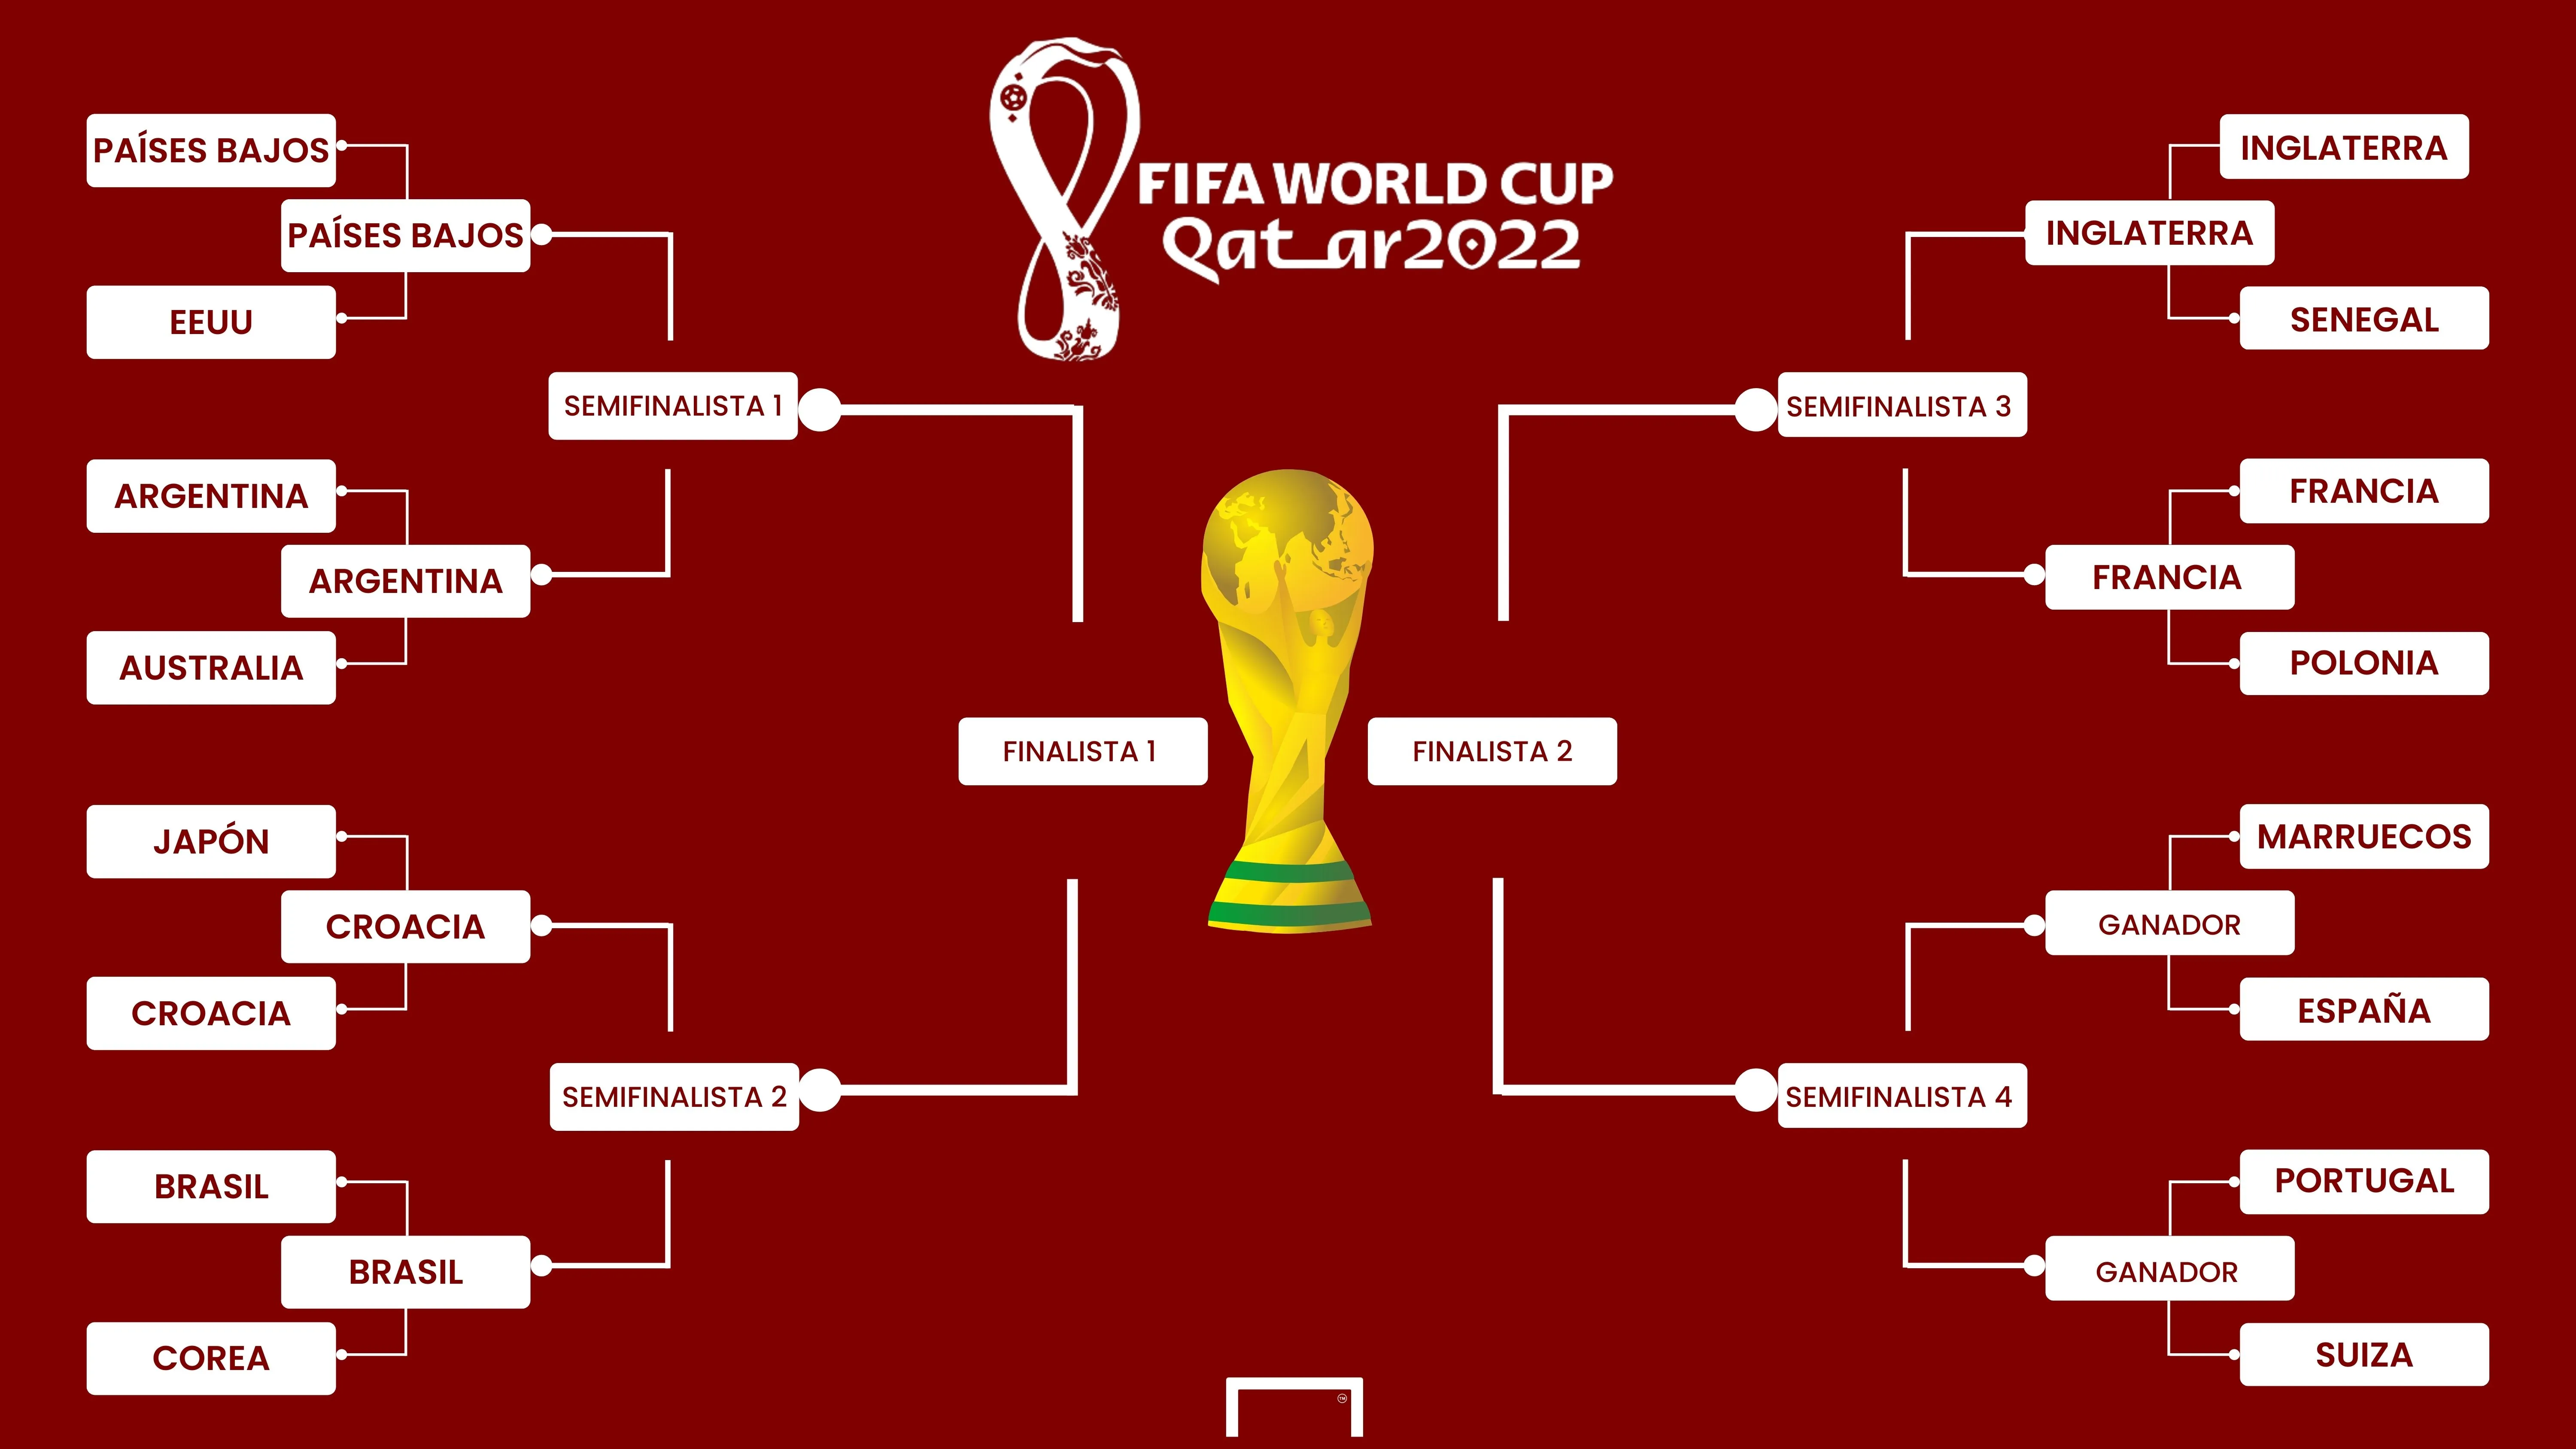 Cuartos de del Mundial Qatar 2022: Cuándo son, selecciones clasificadas, partidos, fechas, horarios y resultados | Goal.com Espana